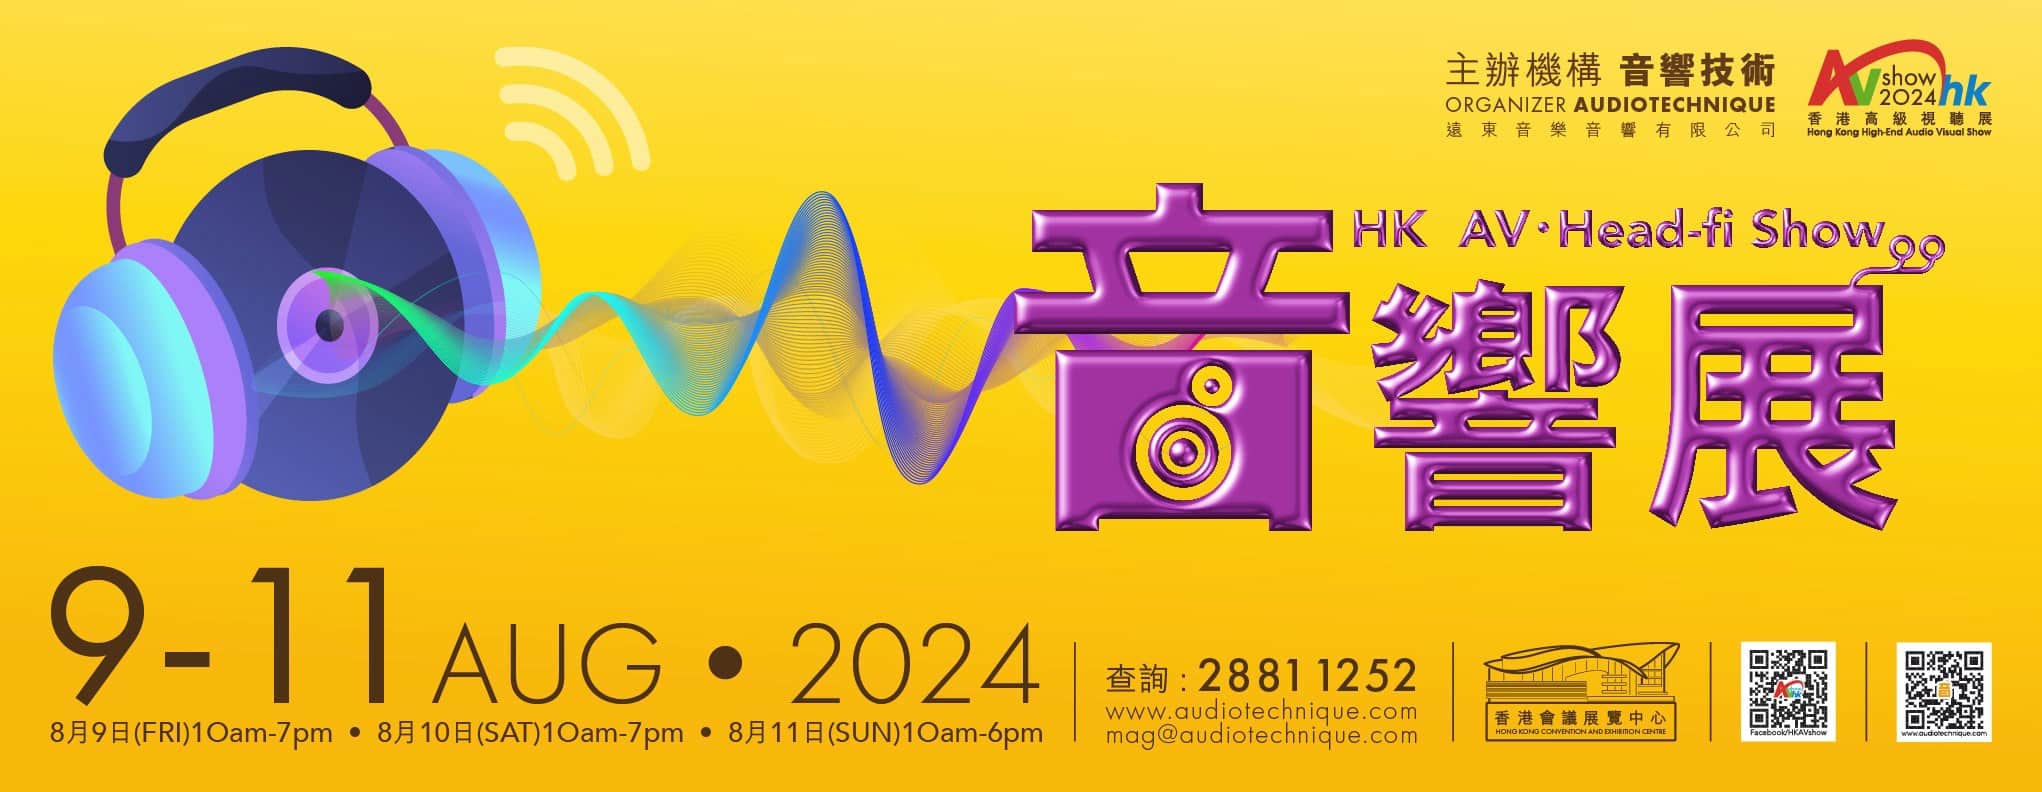 Audiotechnique AV show hong kong Nagra 2024